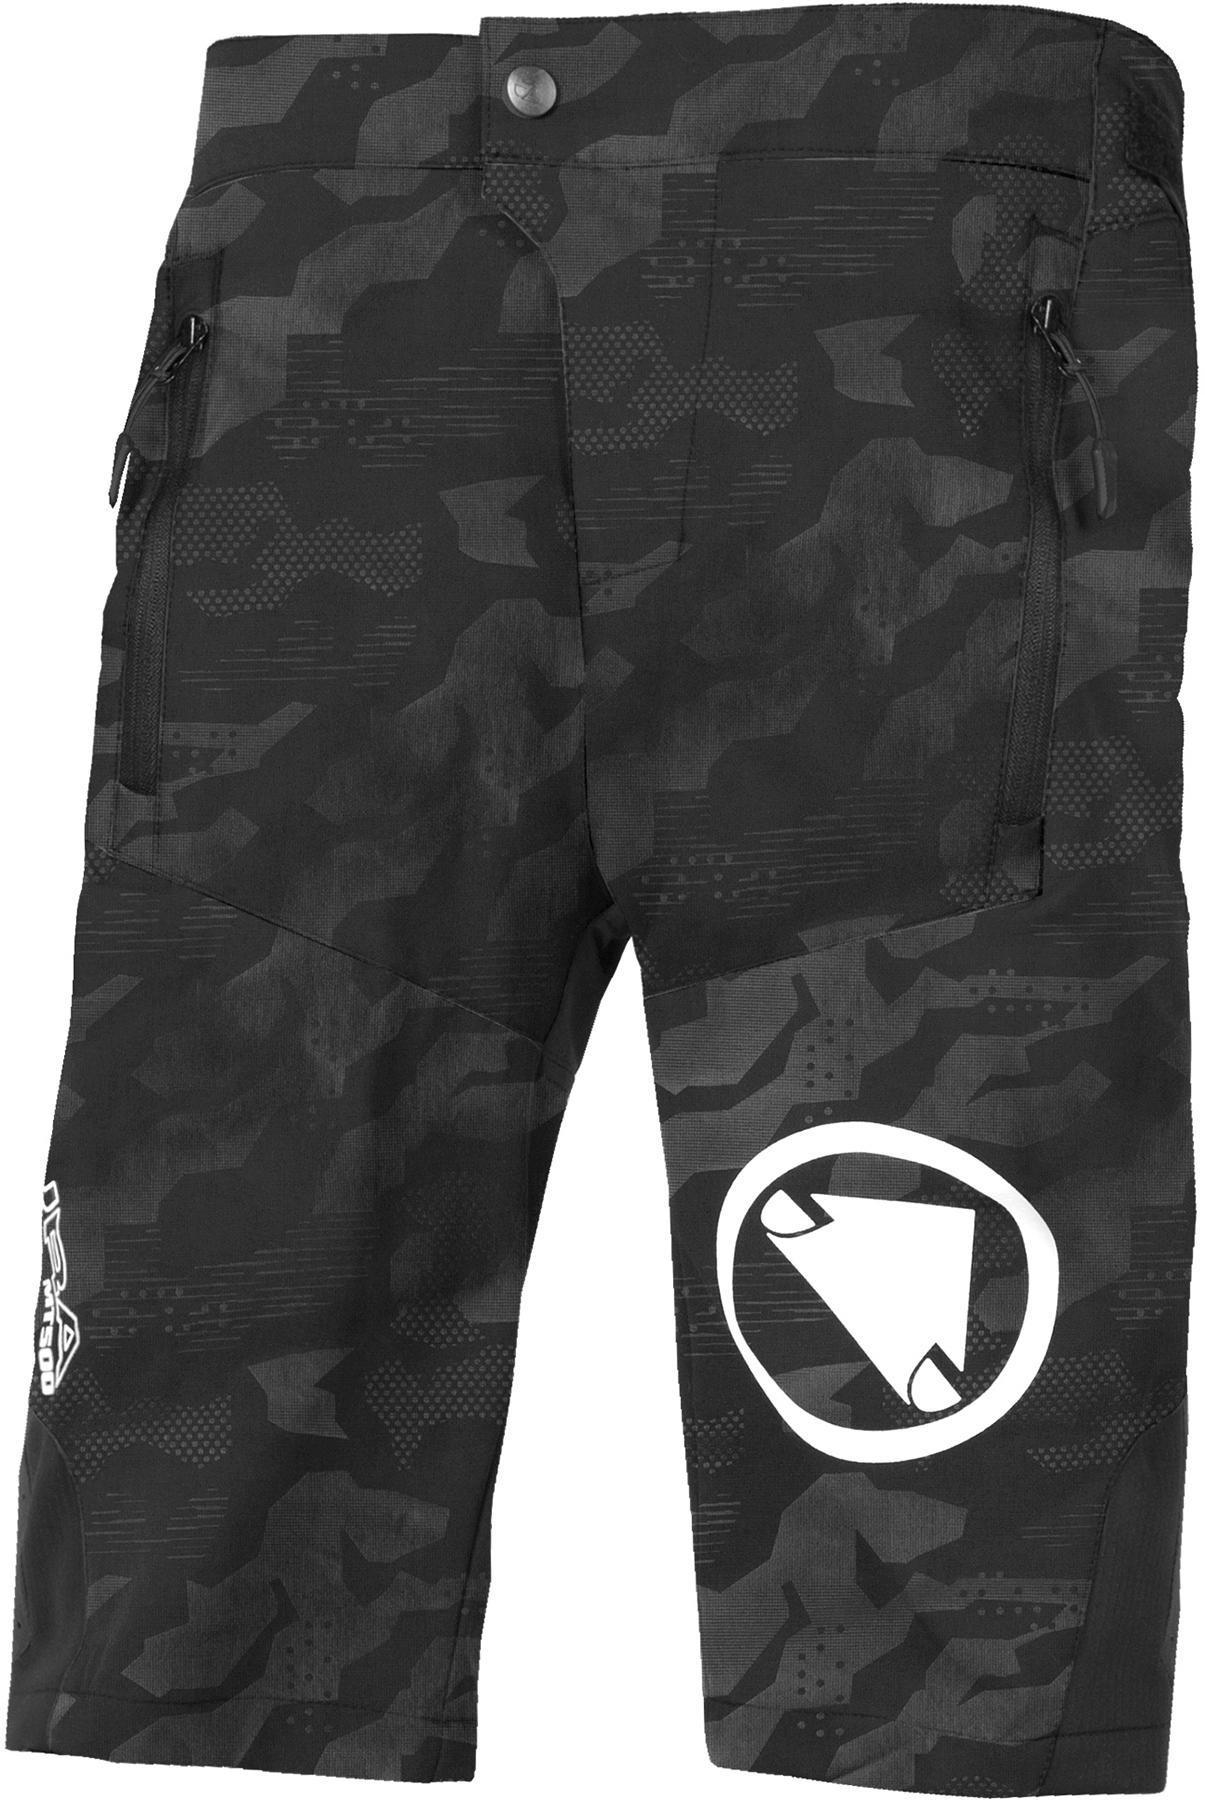 Endura Kids Mt500jr Burner Shorts With Liner - Black Camo